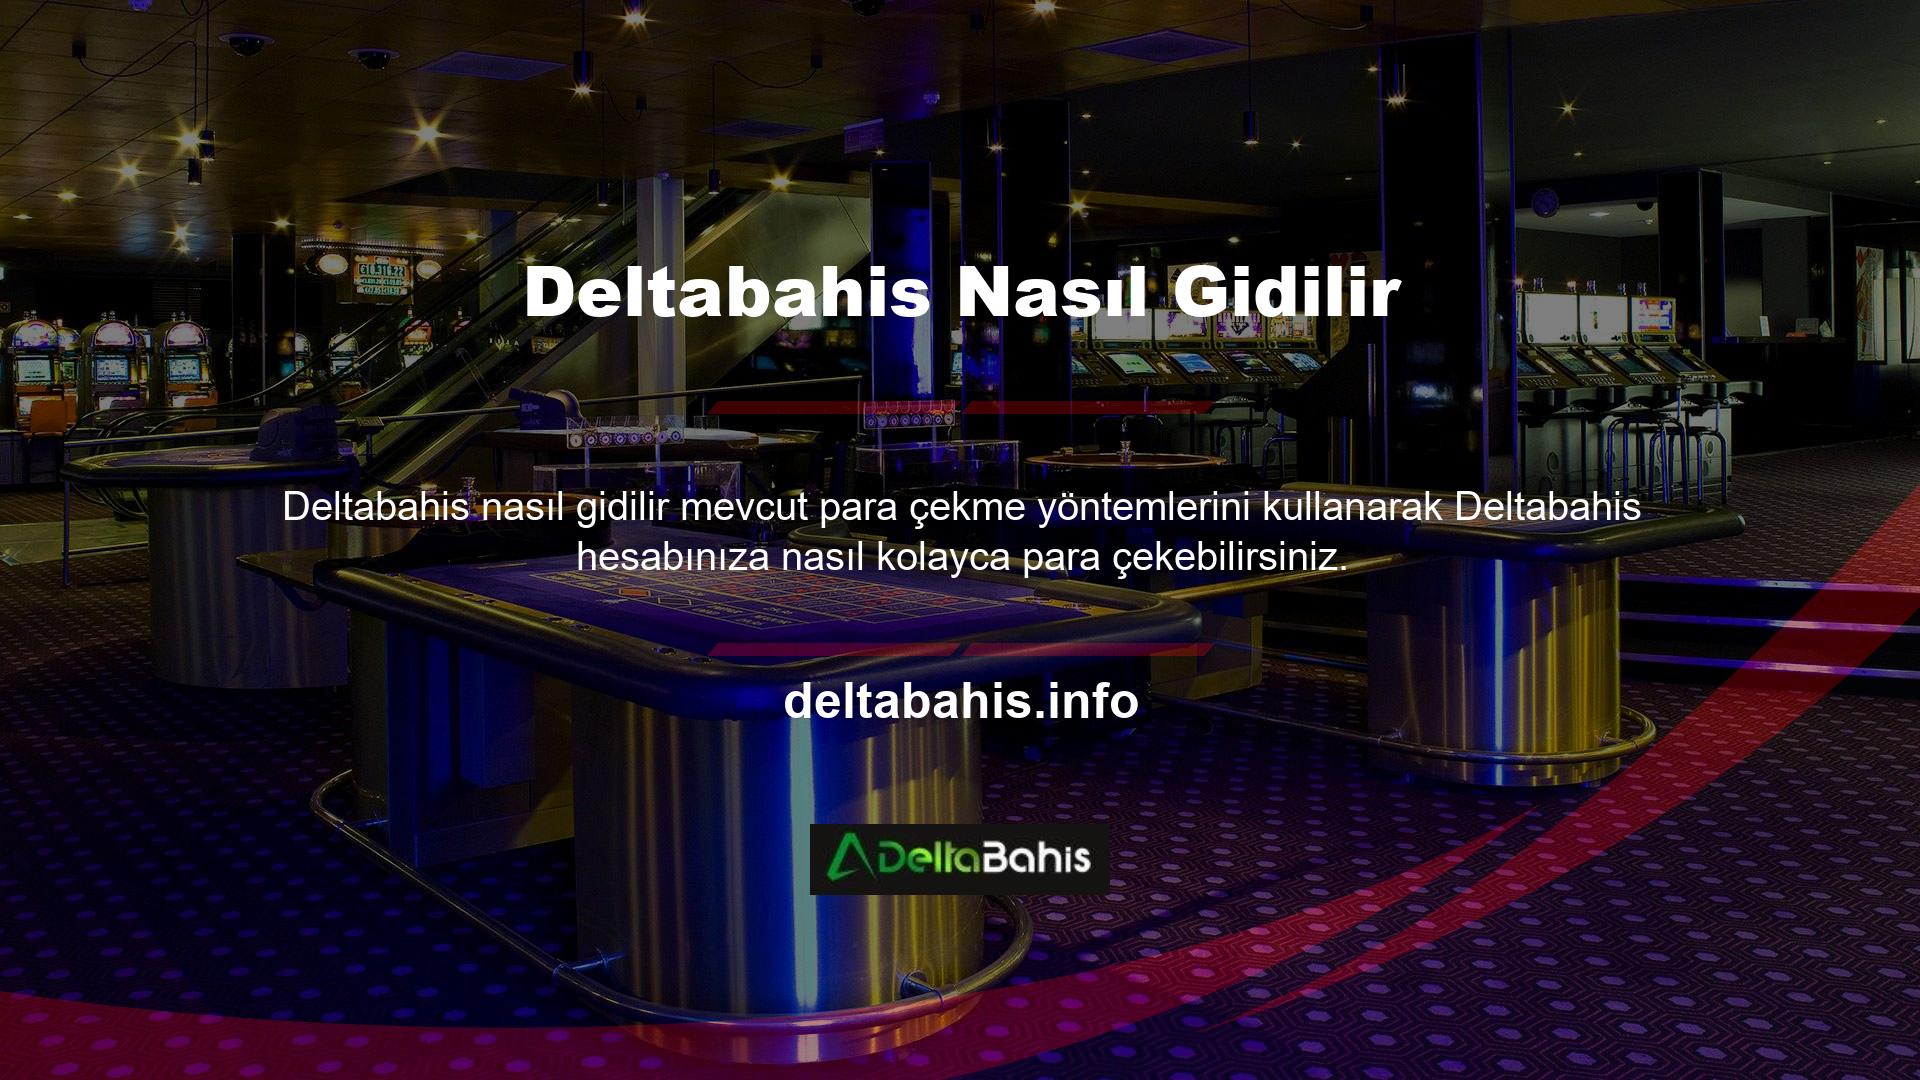 Deltabahis en hızlı para çekme casino adreslerinden biridir, ancak paranızı çekmek için mevcut para çekme yöntemlerinden birini kullanarak para çekme talebinde bulunmanız gerekecektir